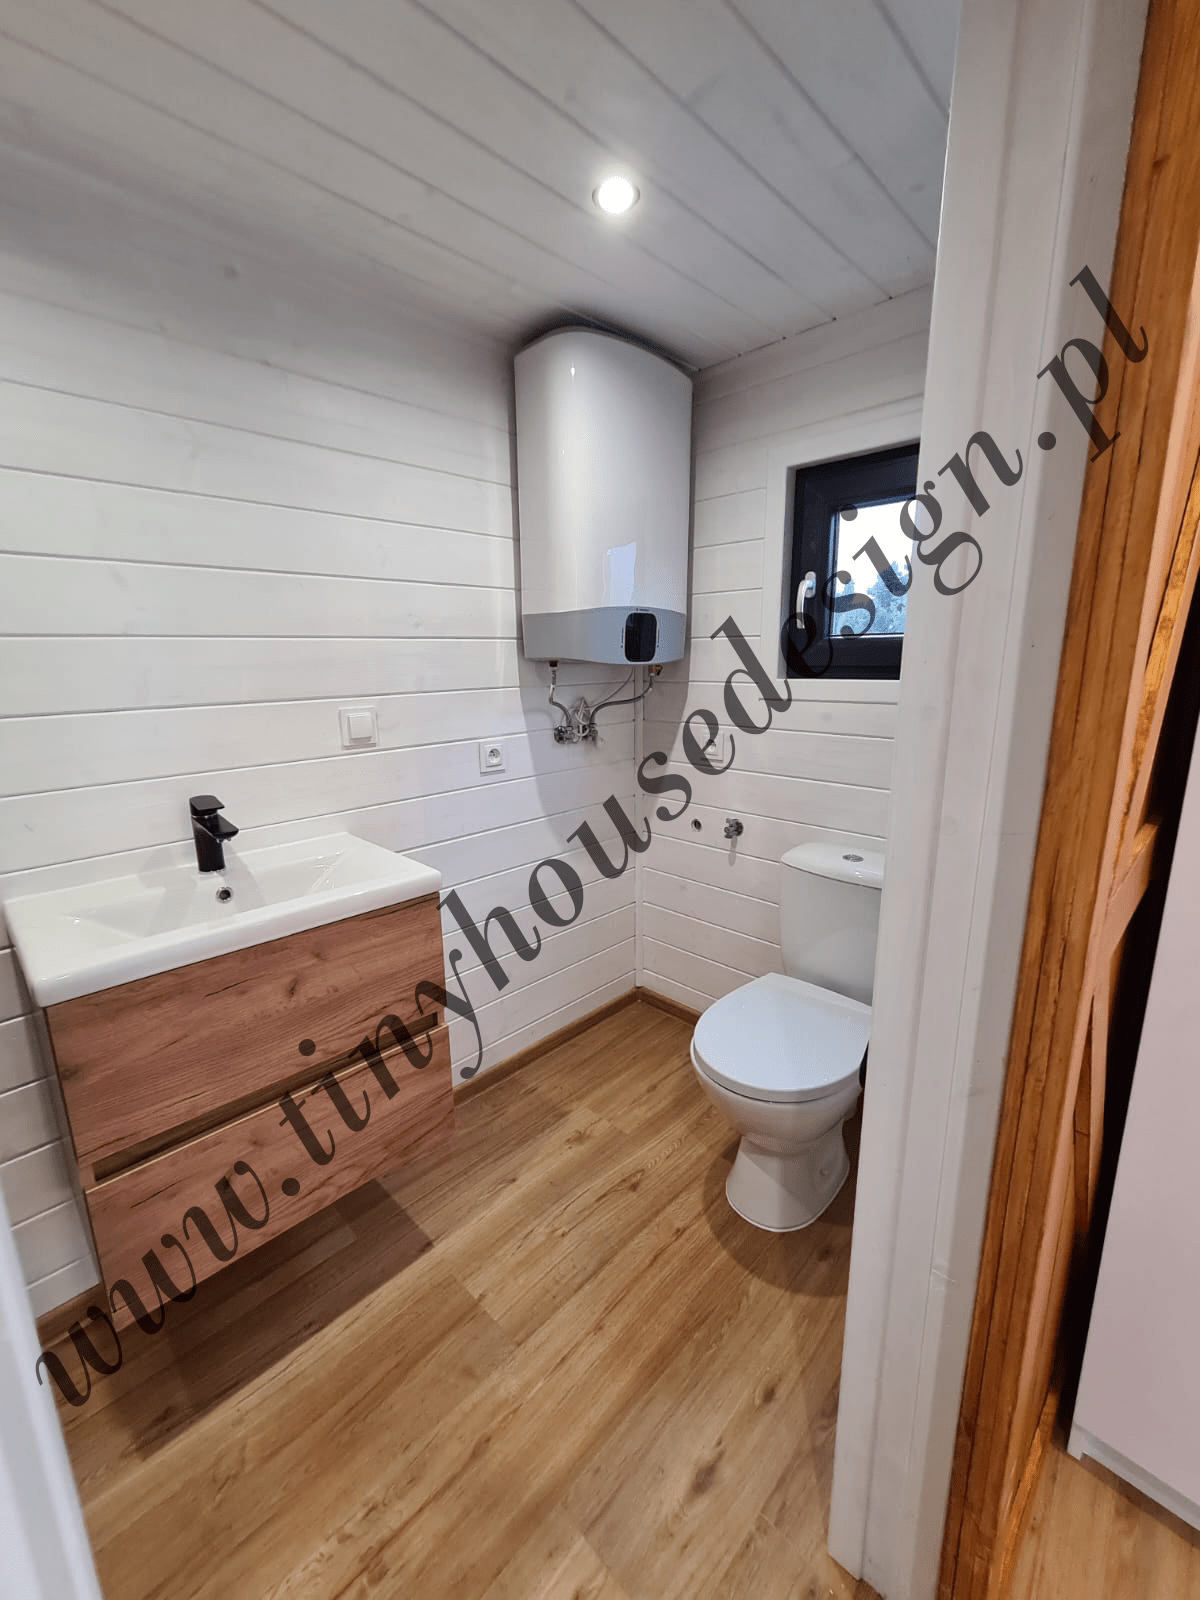 Łazienka w domku Tiny House - umywalka, boiler grzewczy i toaleta, nad toaletą okno